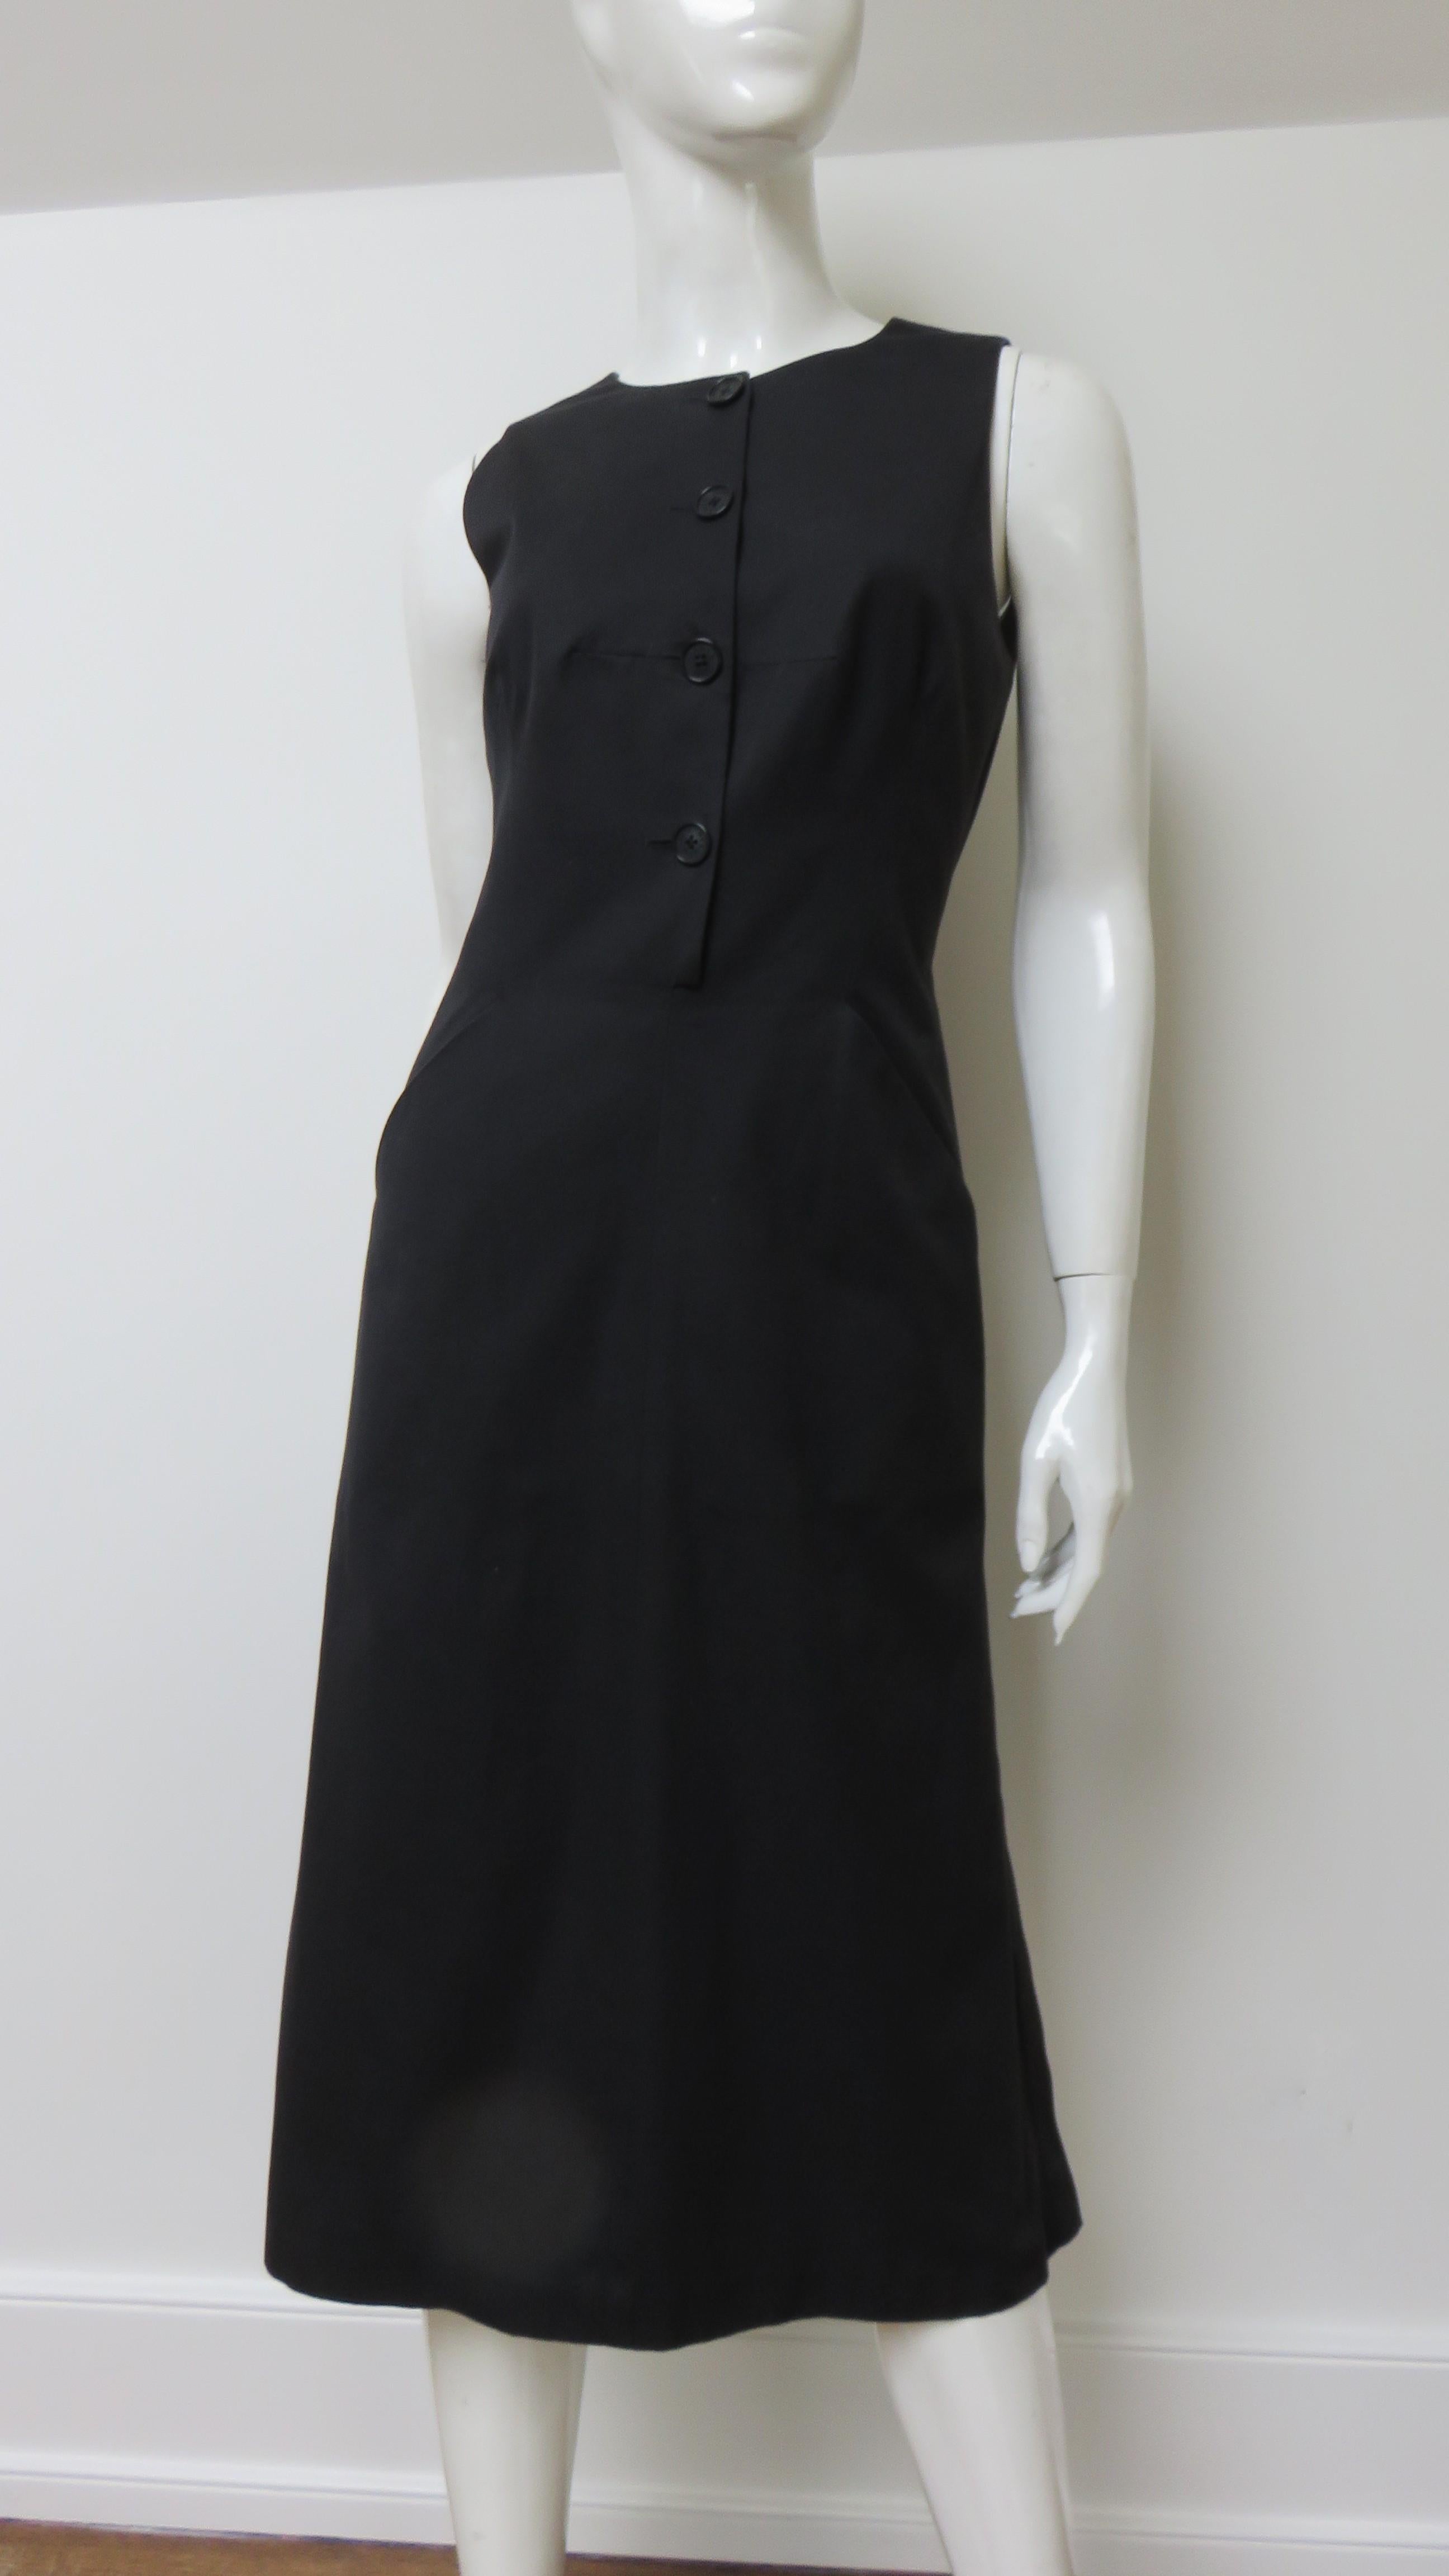 Une fabuleuse robe noire en coton poli signée Hermès.  Elle est sans manches, avec une encolure ras du cou, une fermeture boutonnée à la taille, des poches sur les hanches et un dos découpé avec un laçage réglable qui le traverse. La jupe évasée est